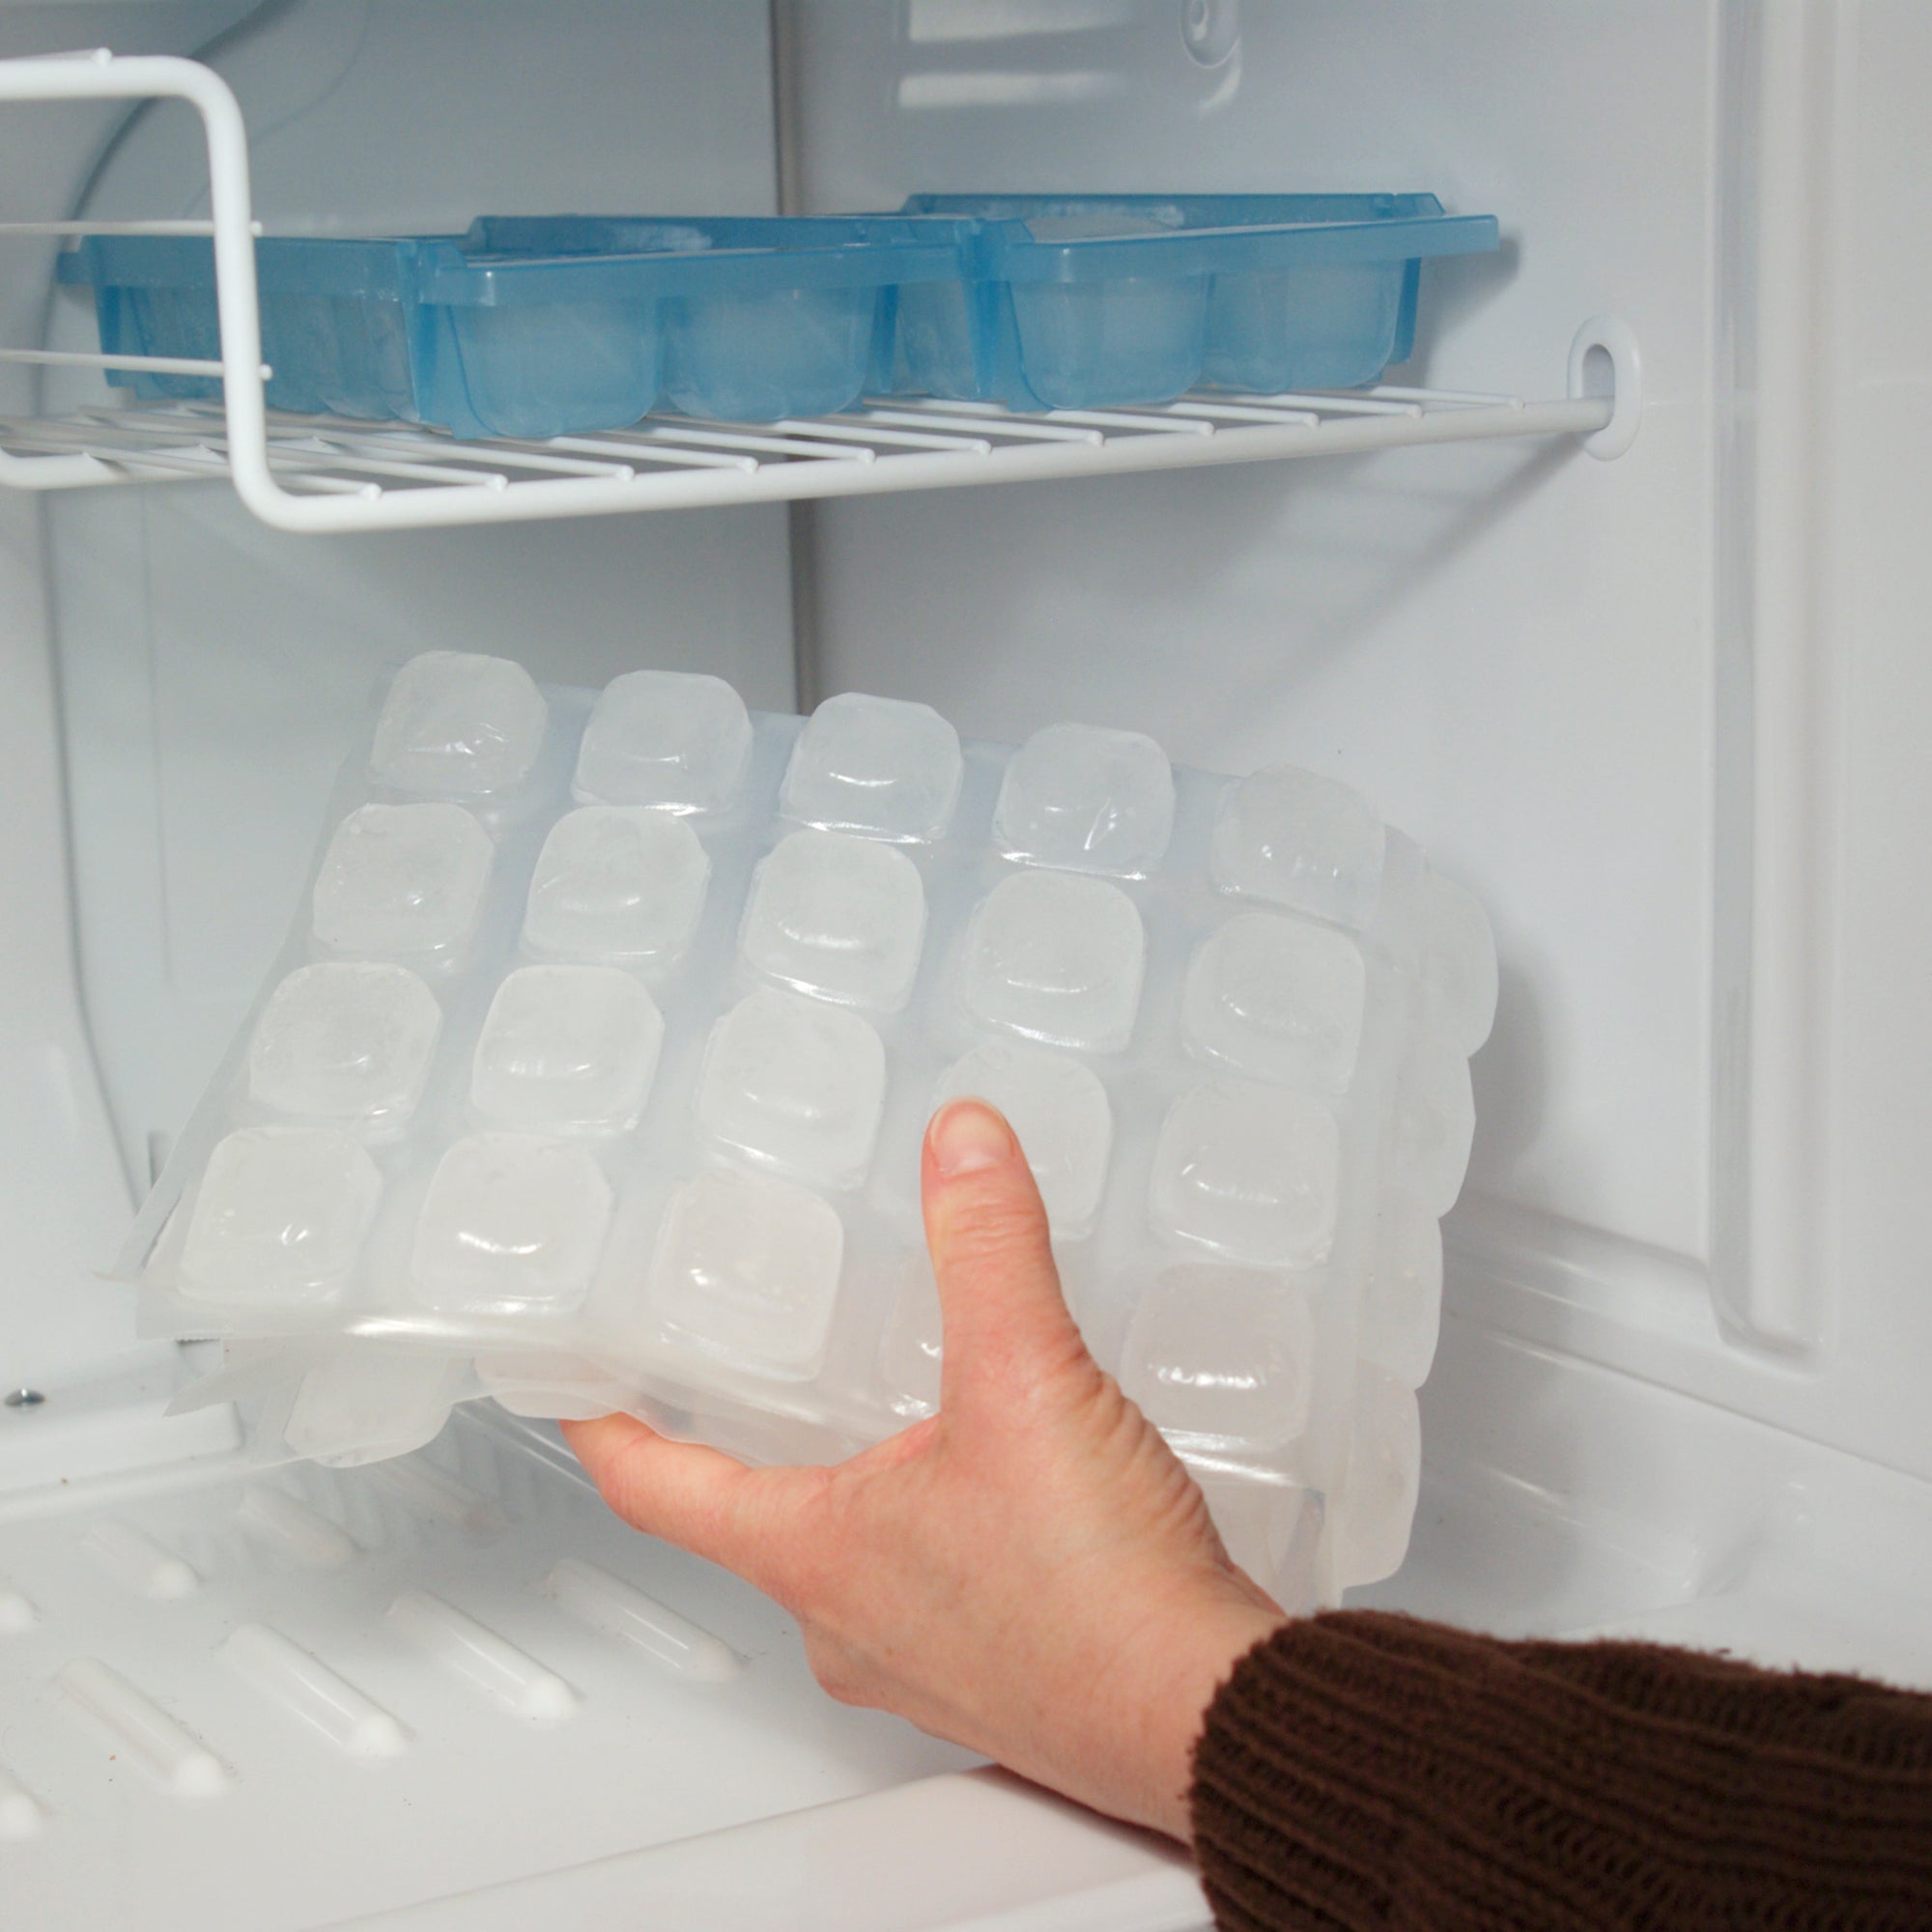 Hand placing folded FlexiFreeze ice sheet into freezer